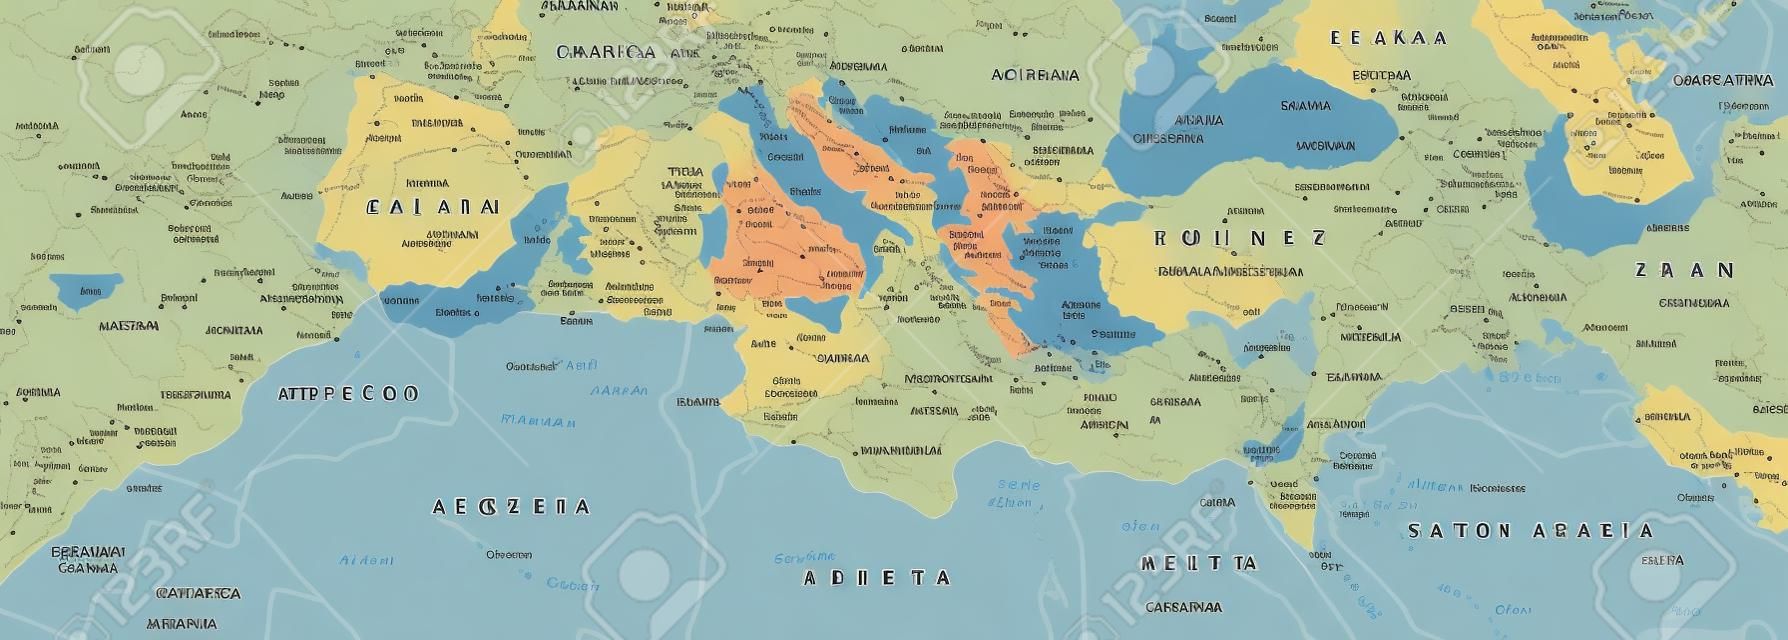 Mapa Político da Bacia Mediterrânica. Europa do Sul Norte da África e Próximo Oriente com capitais fronteiras nacionais rios e lagos. Inglês rotulagem e escala. Ilustração.